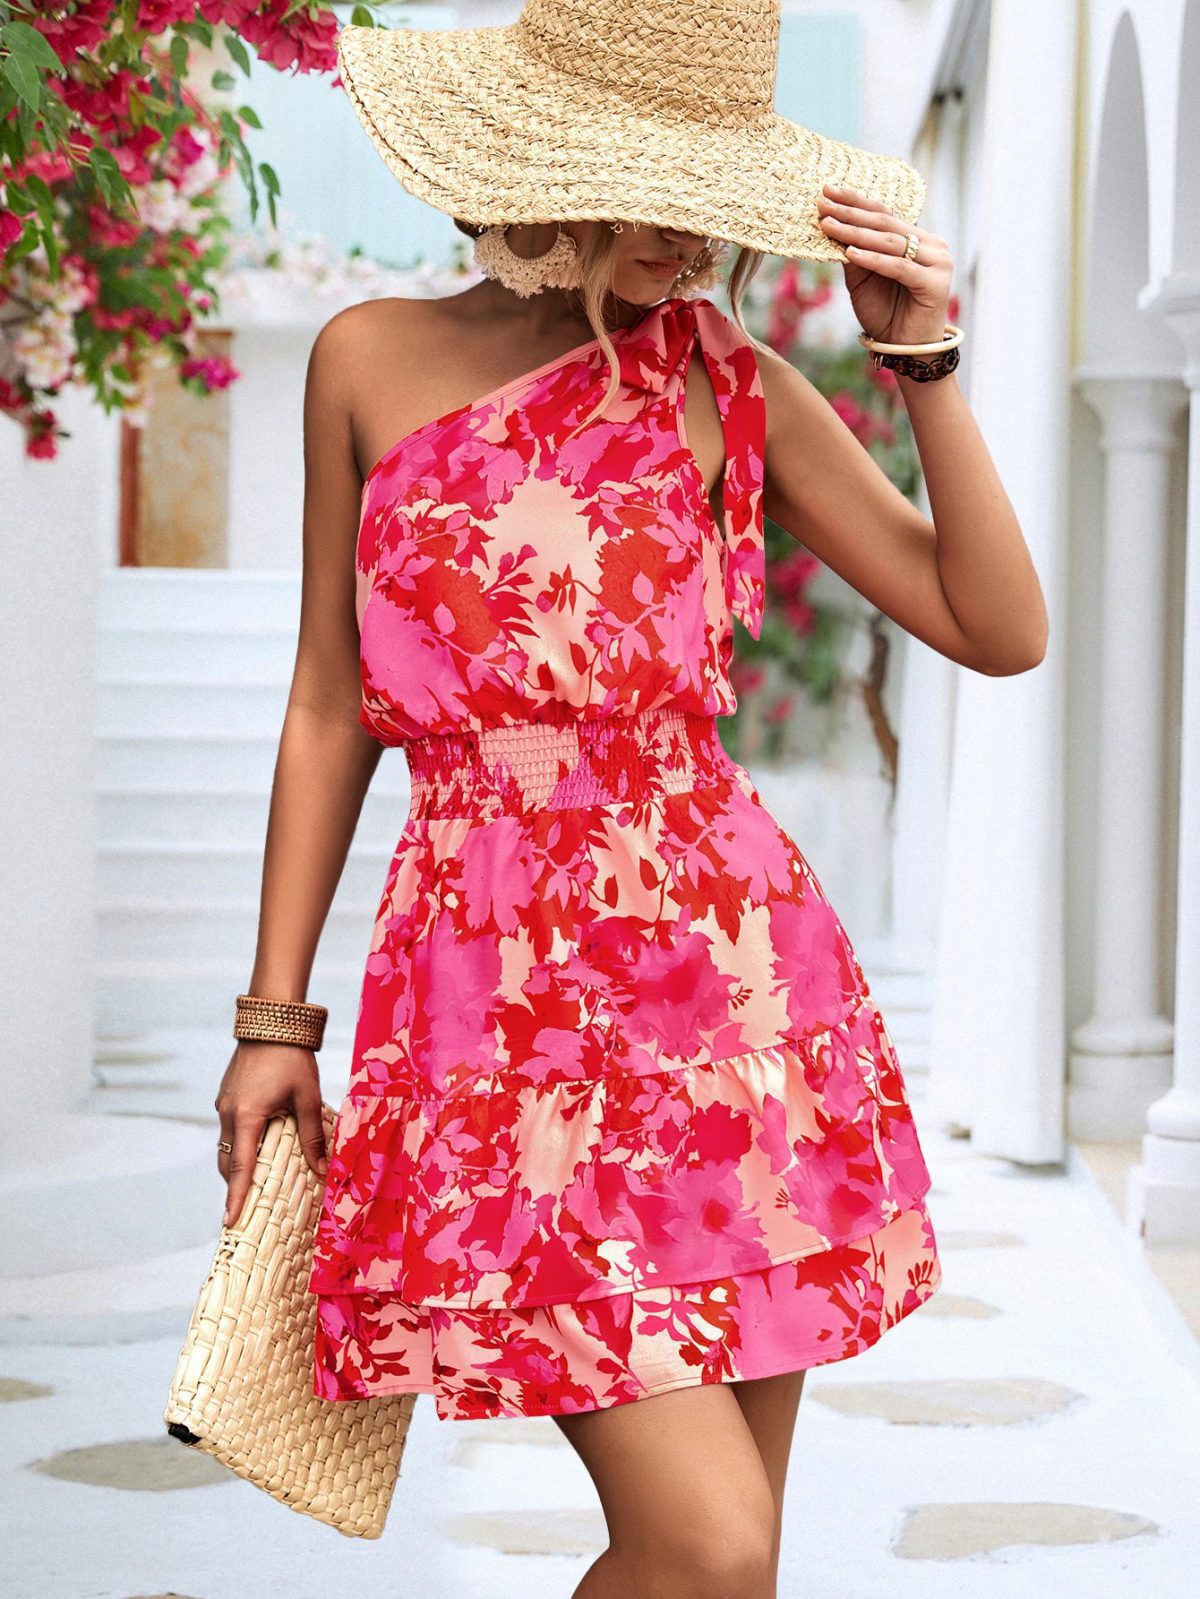 Summer One Shoulder Dress in Dresses